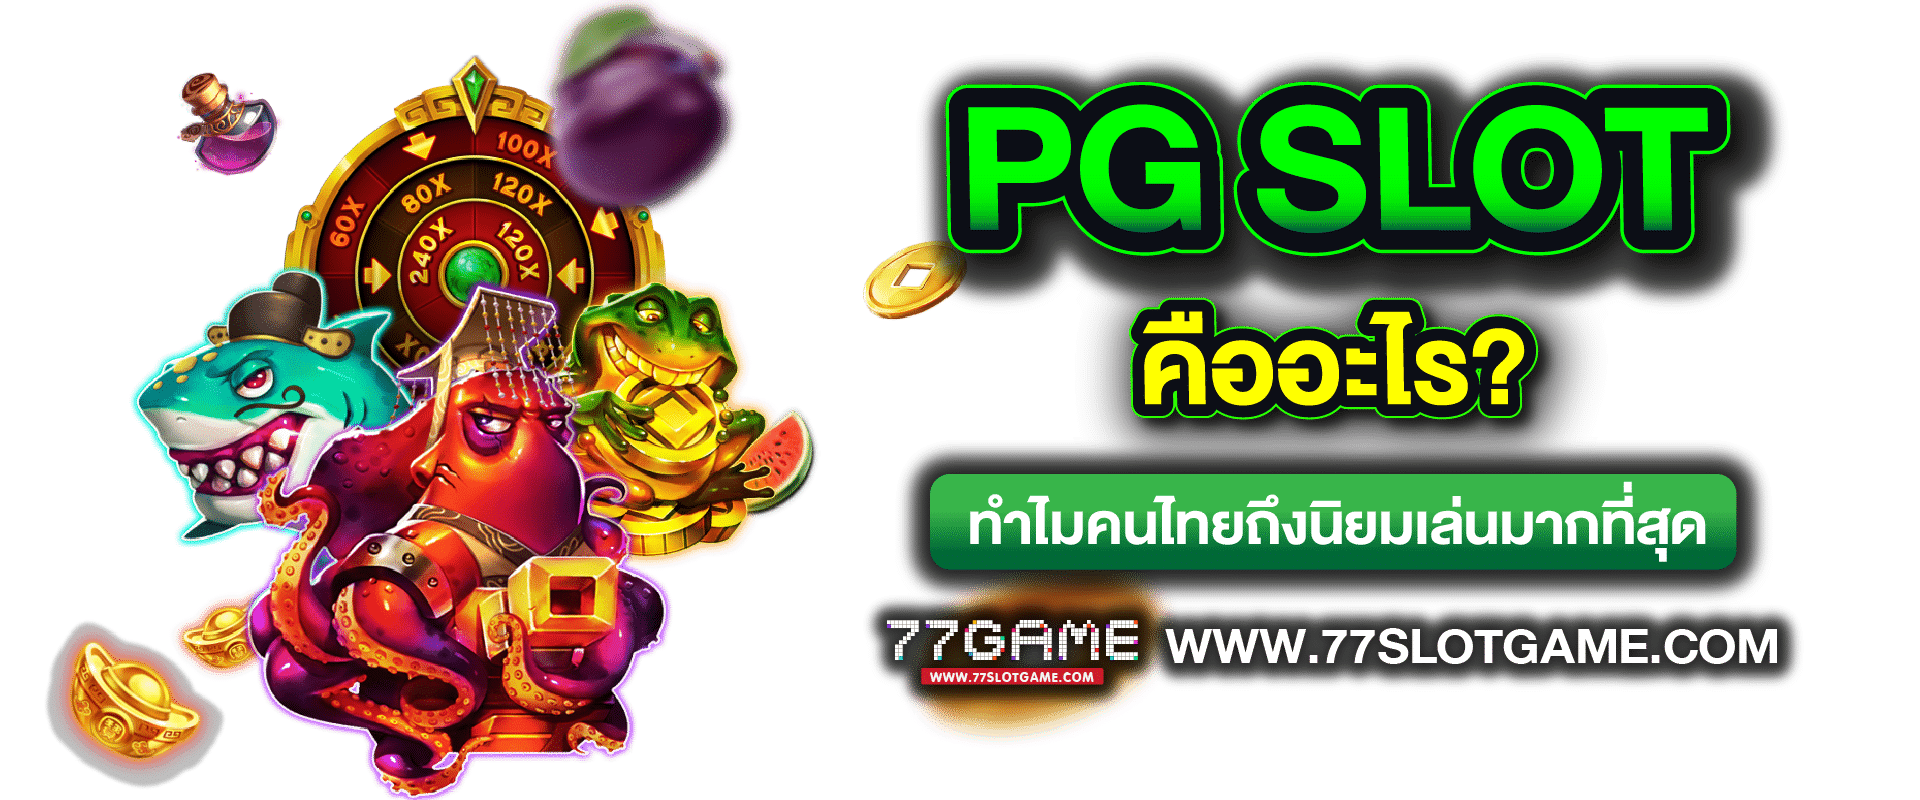 PG SLOT คืออะไร ทำไมคนไทยถึงนิยมเล่นมากที่สุด